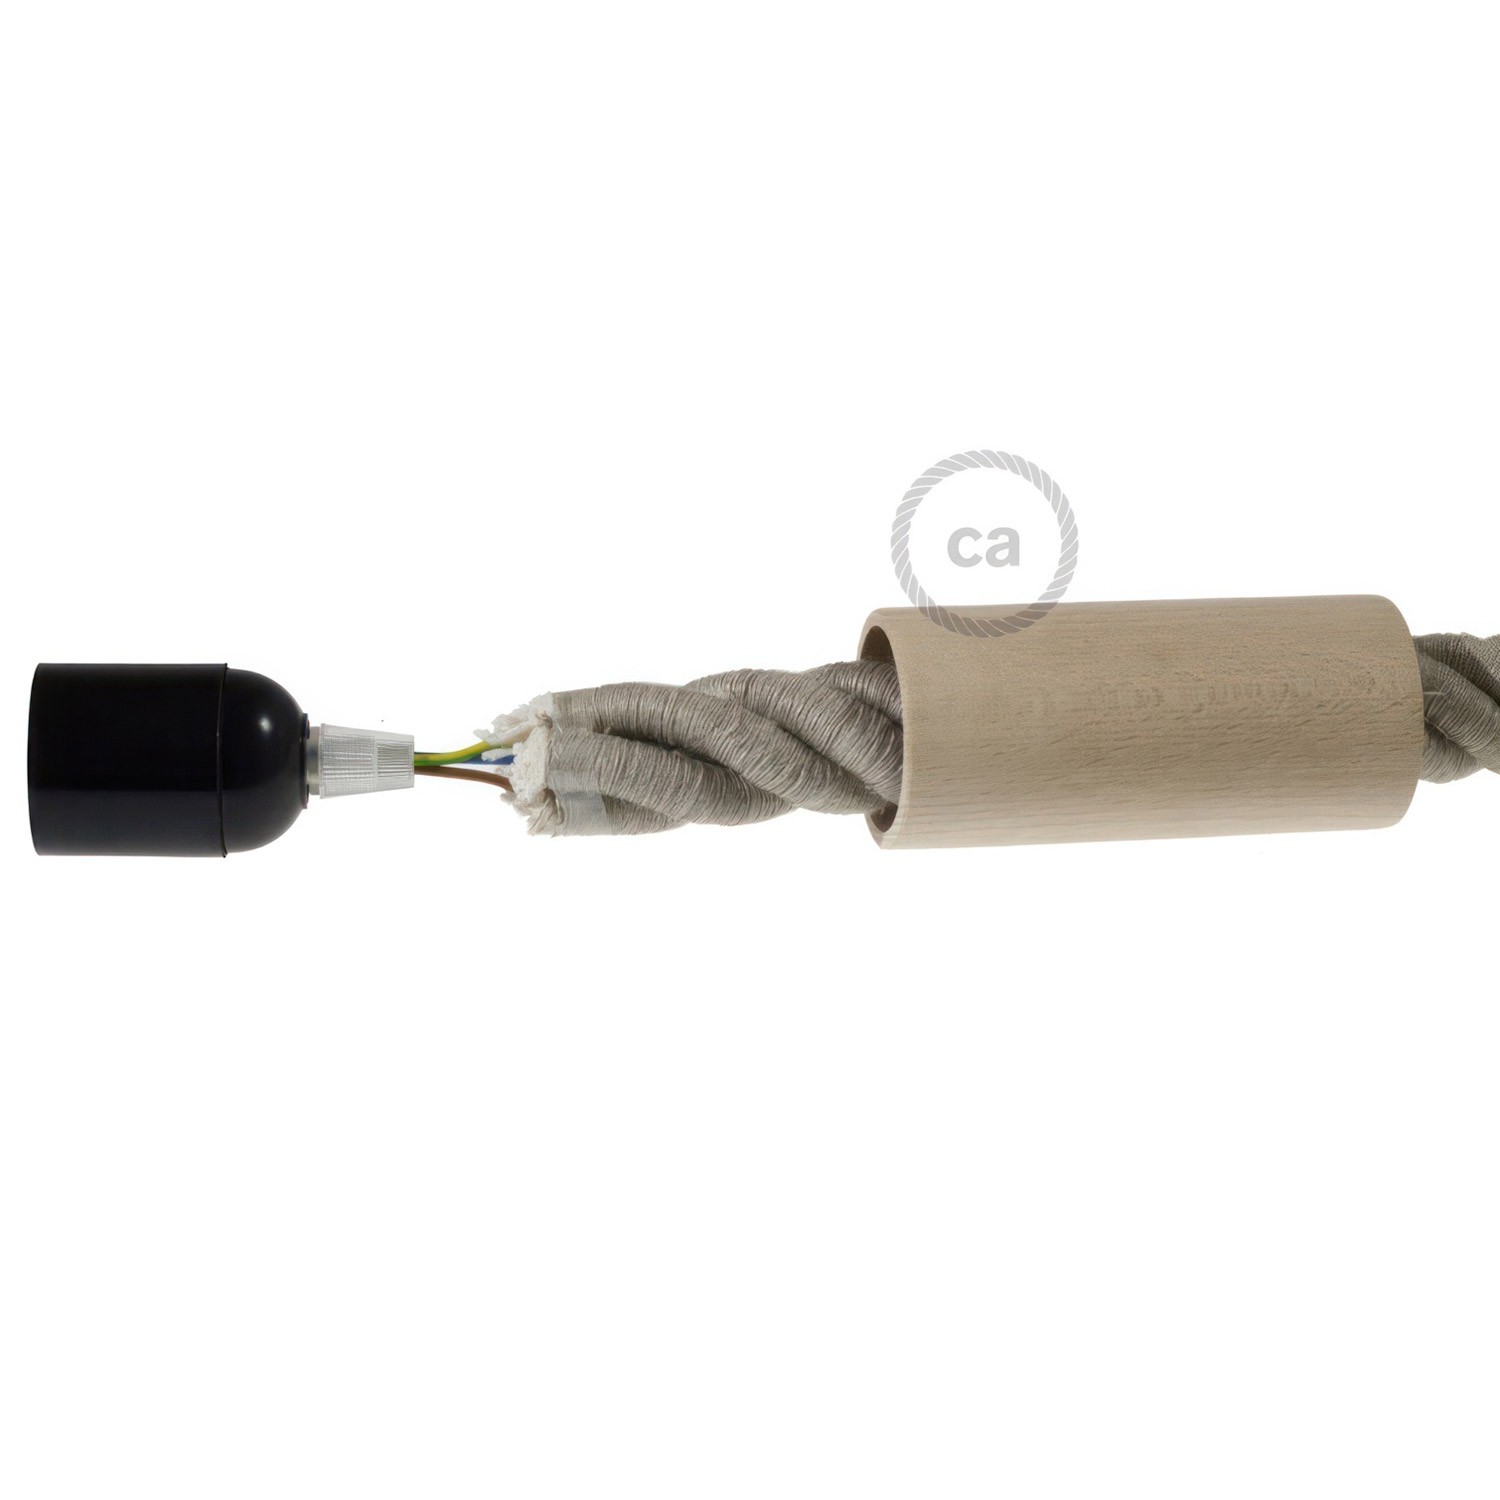 Wooden E27 lamp holder kit for 3XL cord